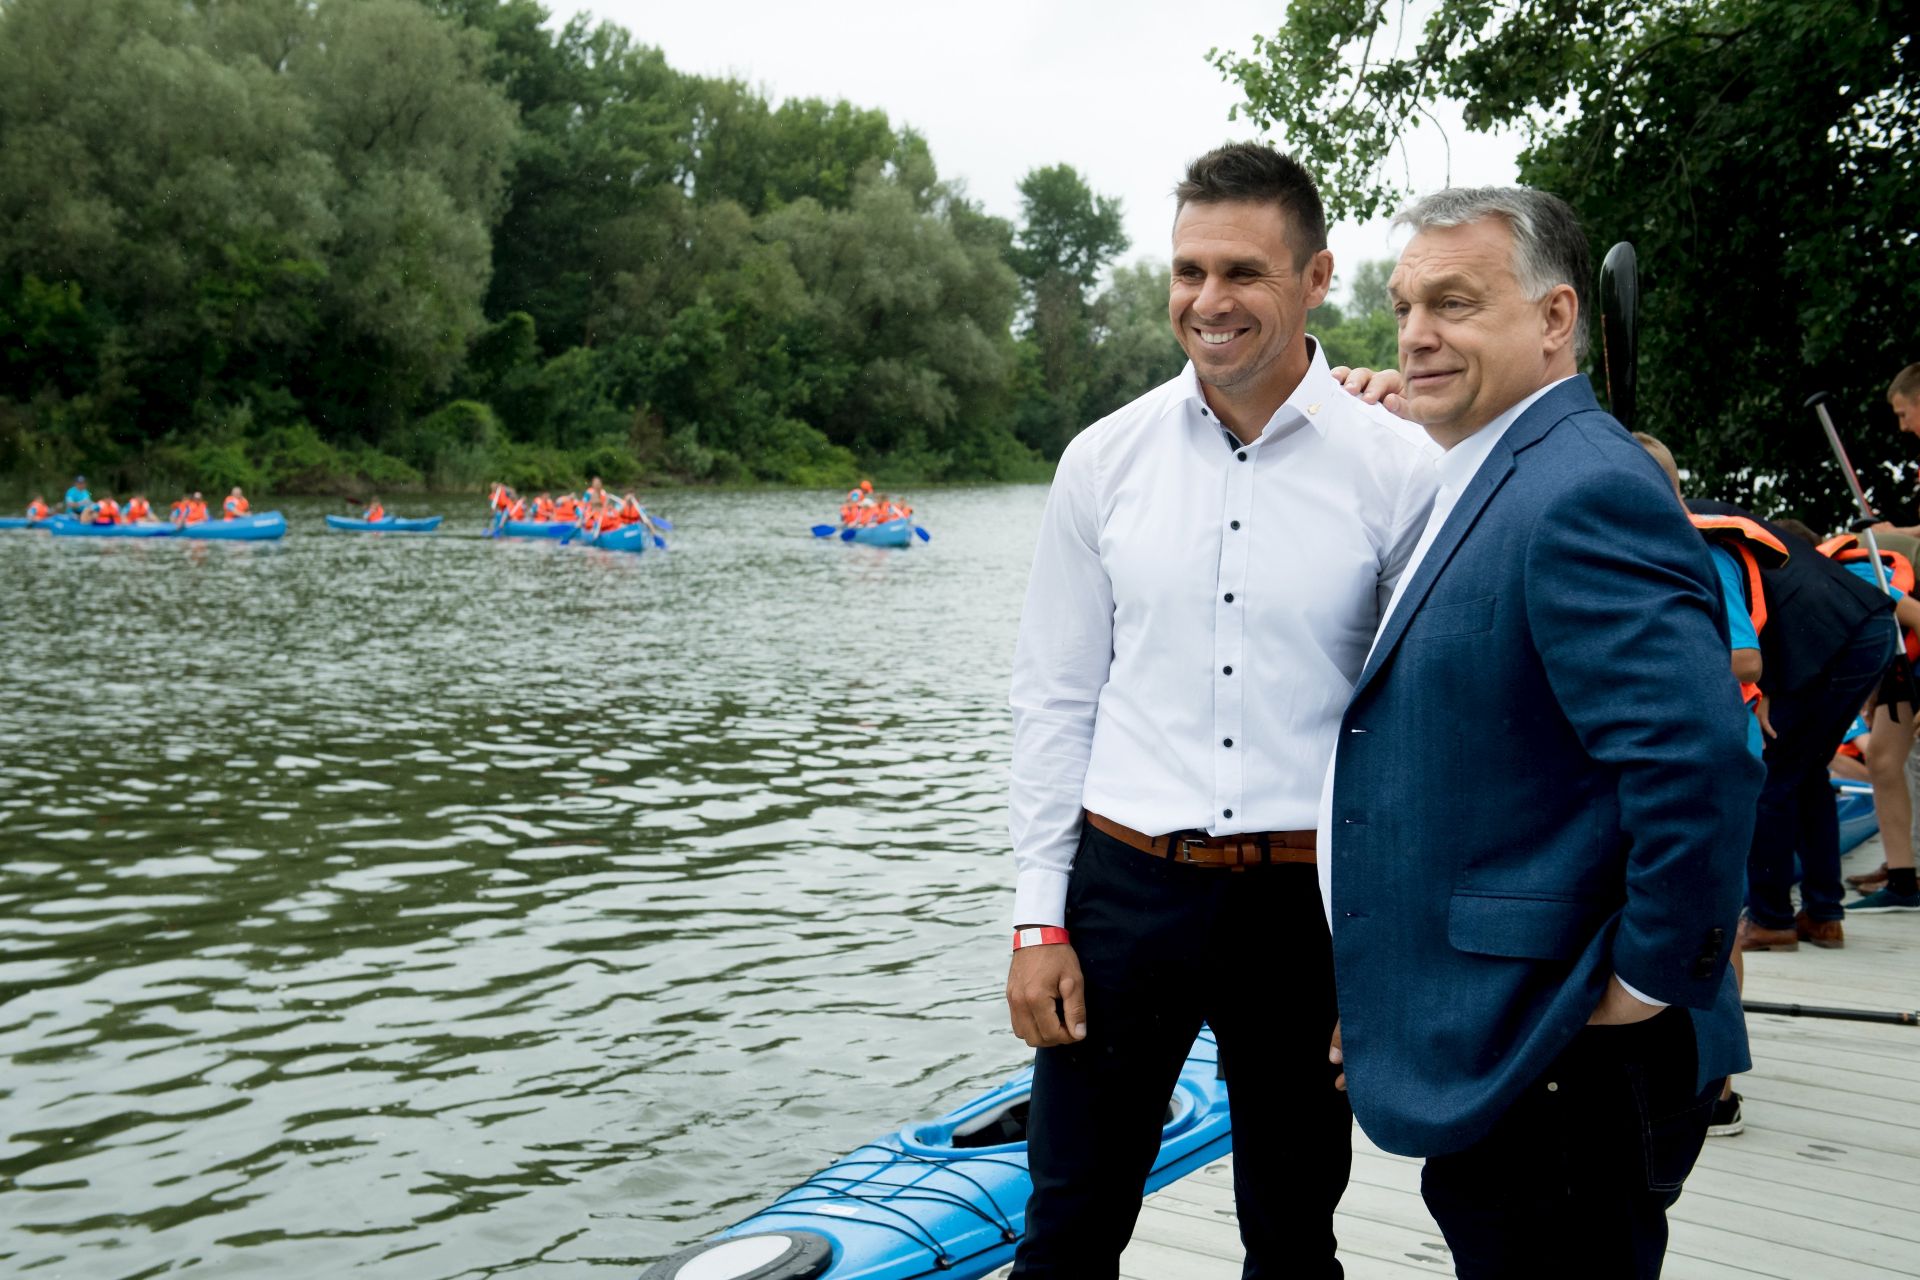 Sportolók a politikában, a Fidesz álruhában